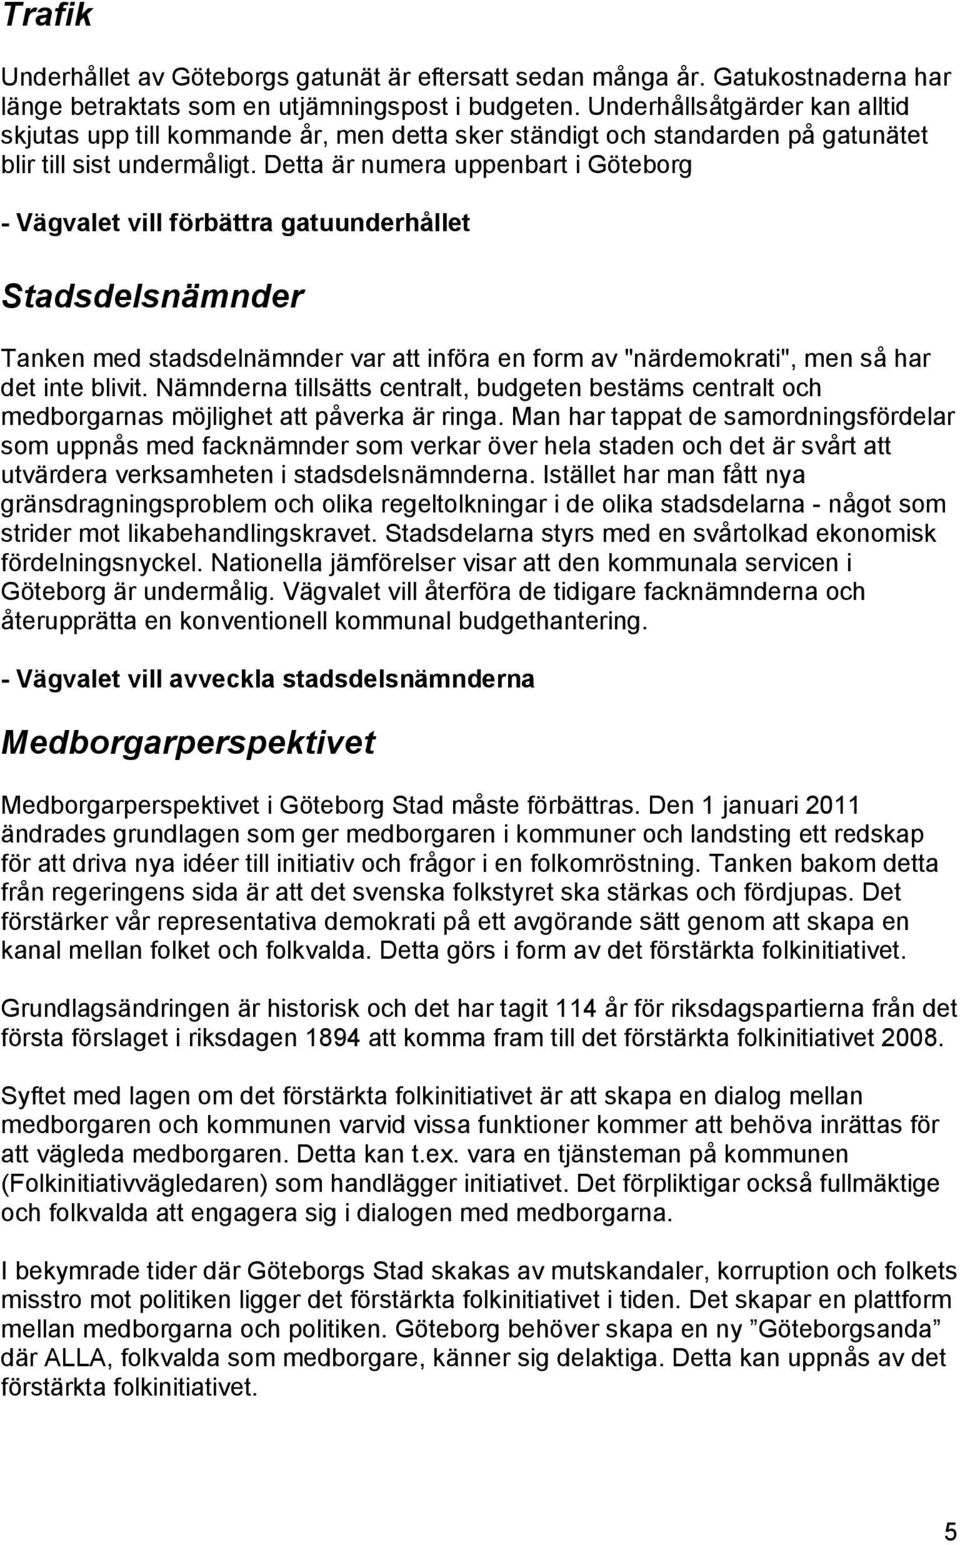 Detta är numera uppenbart i Göteborg - Vägvalet vill förbättra gatuunderhållet Stadsdelsnämnder Tanken med stadsdelnämnder var att införa en form av "närdemokrati", men så har det inte blivit.